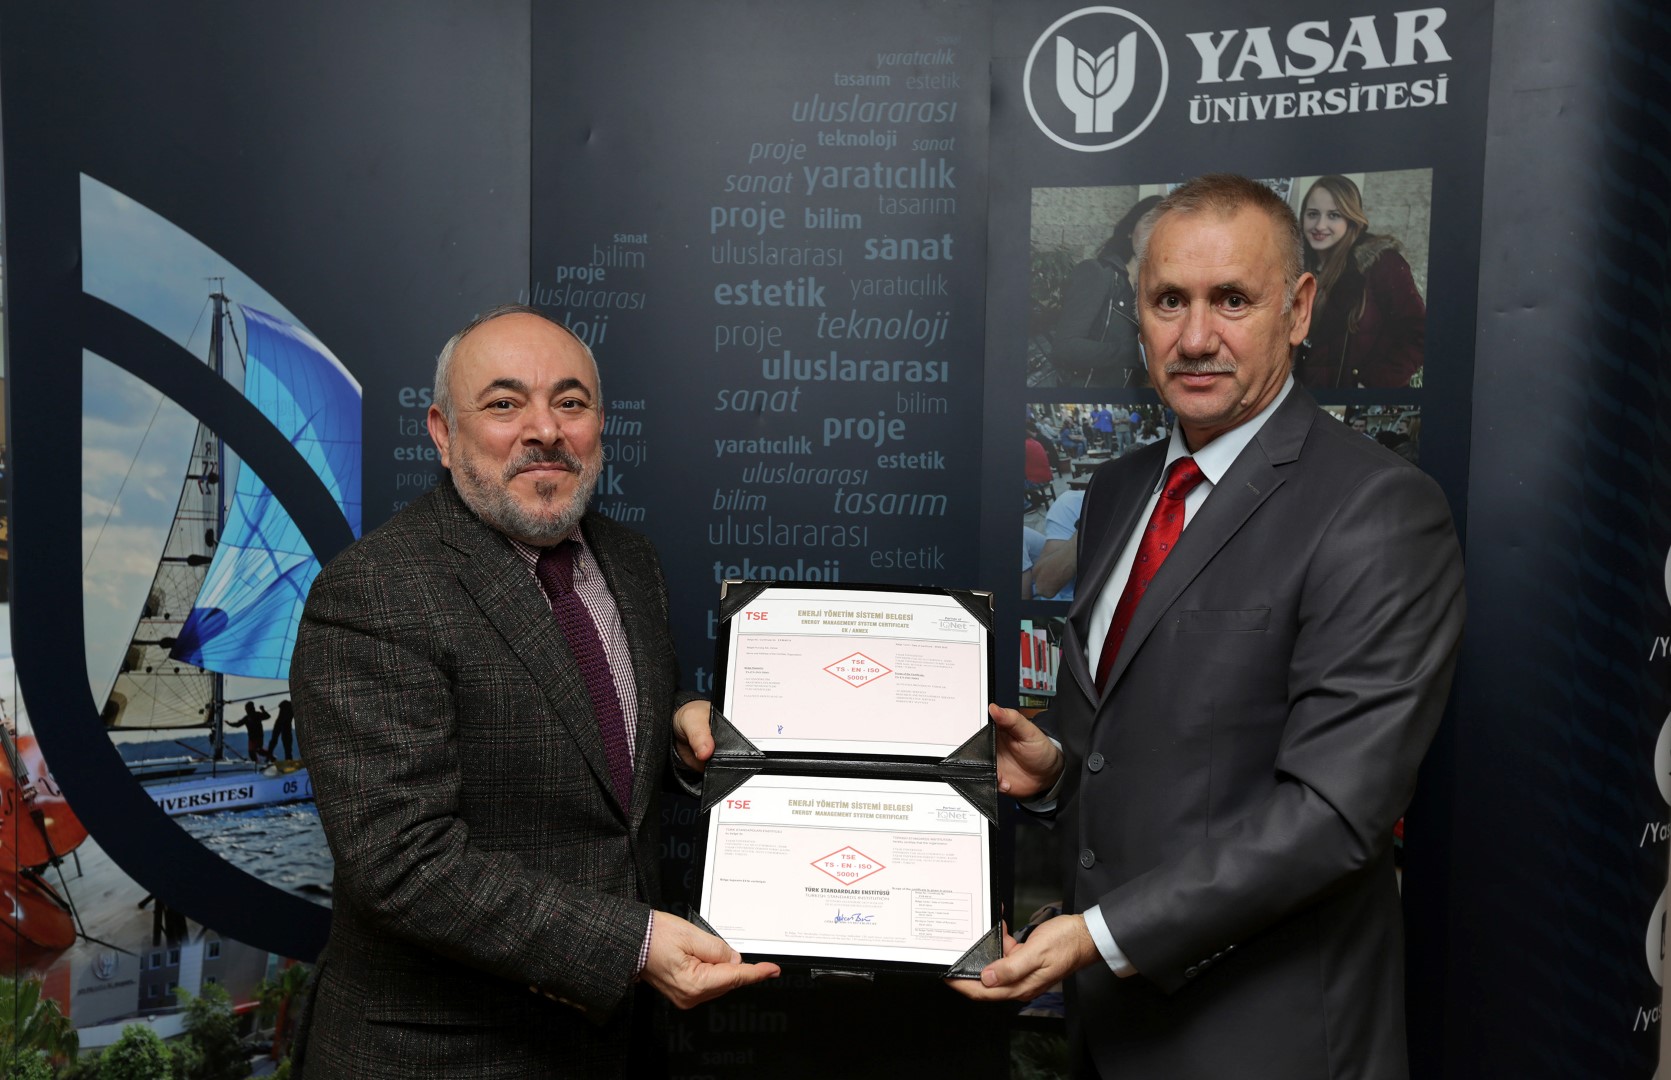 Yaşar Üniversitesi Rektörü Prof. Dr. Cemali Dinçer TS EN ISO 50001 belgesini TSE Ege Bölge Koordinatörü Atila Gündüz’den aldı.